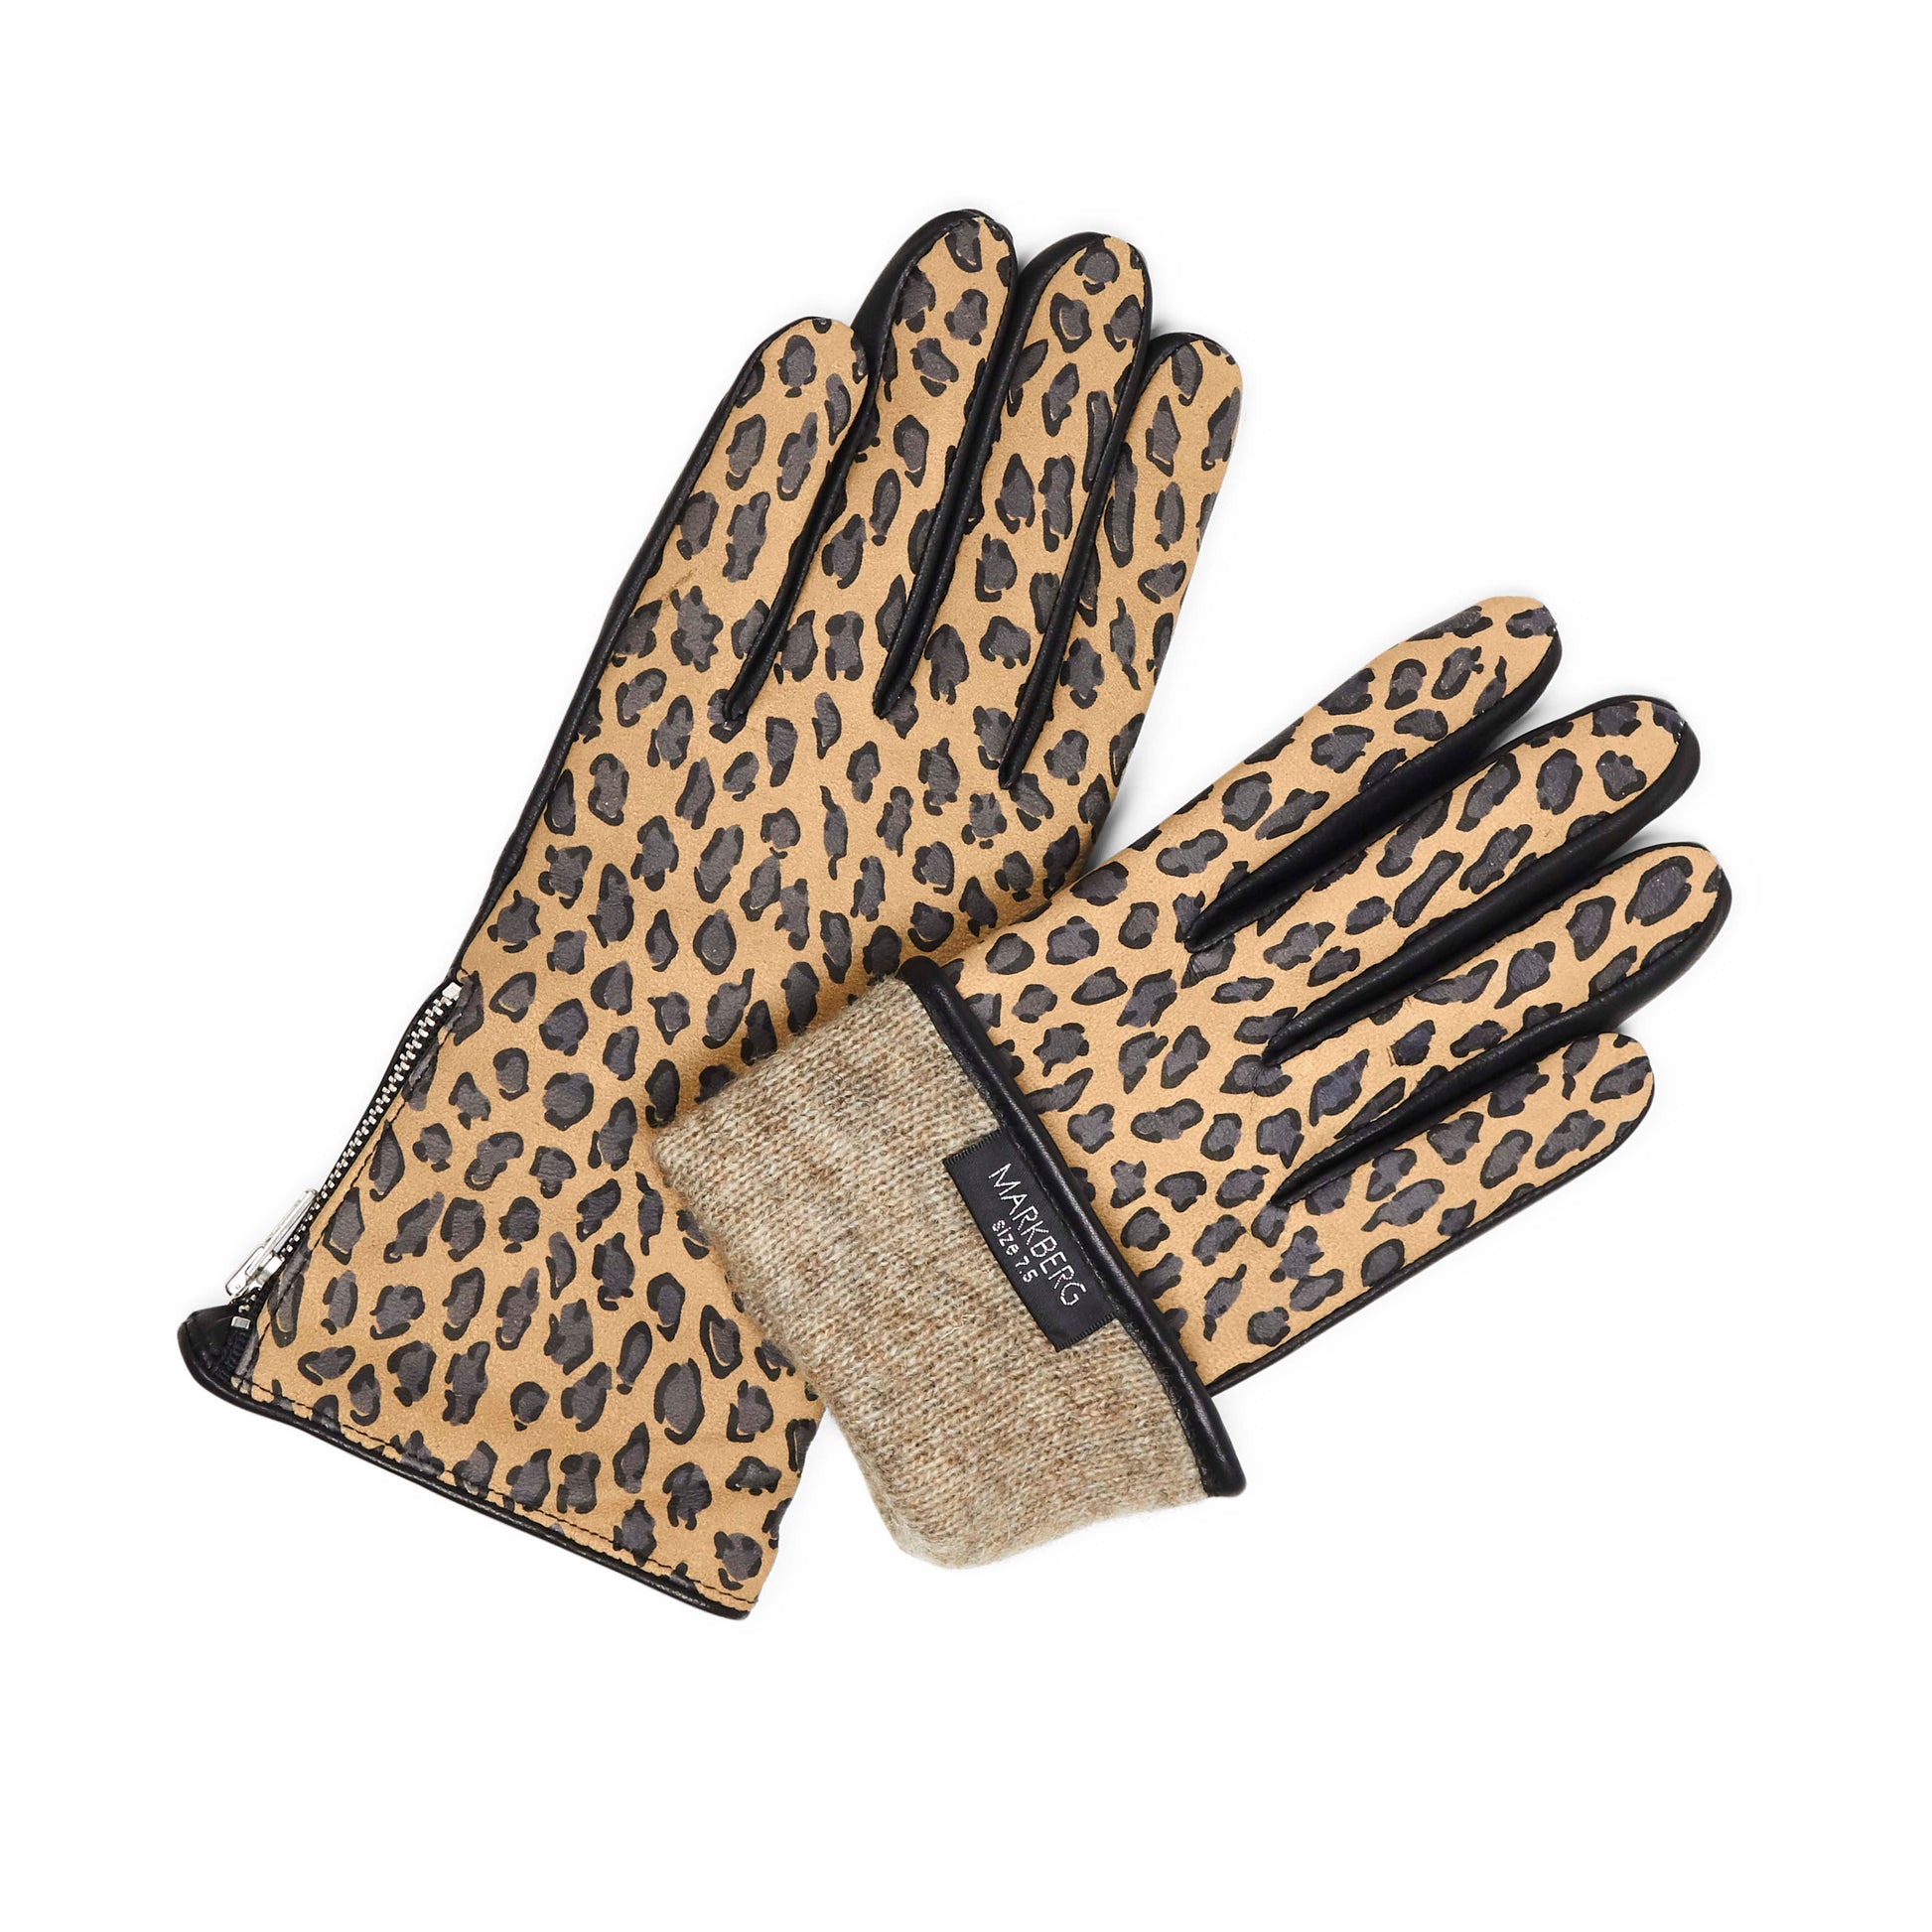 KathMBG Glove damehandske. Leopard Print i læder. Markberg